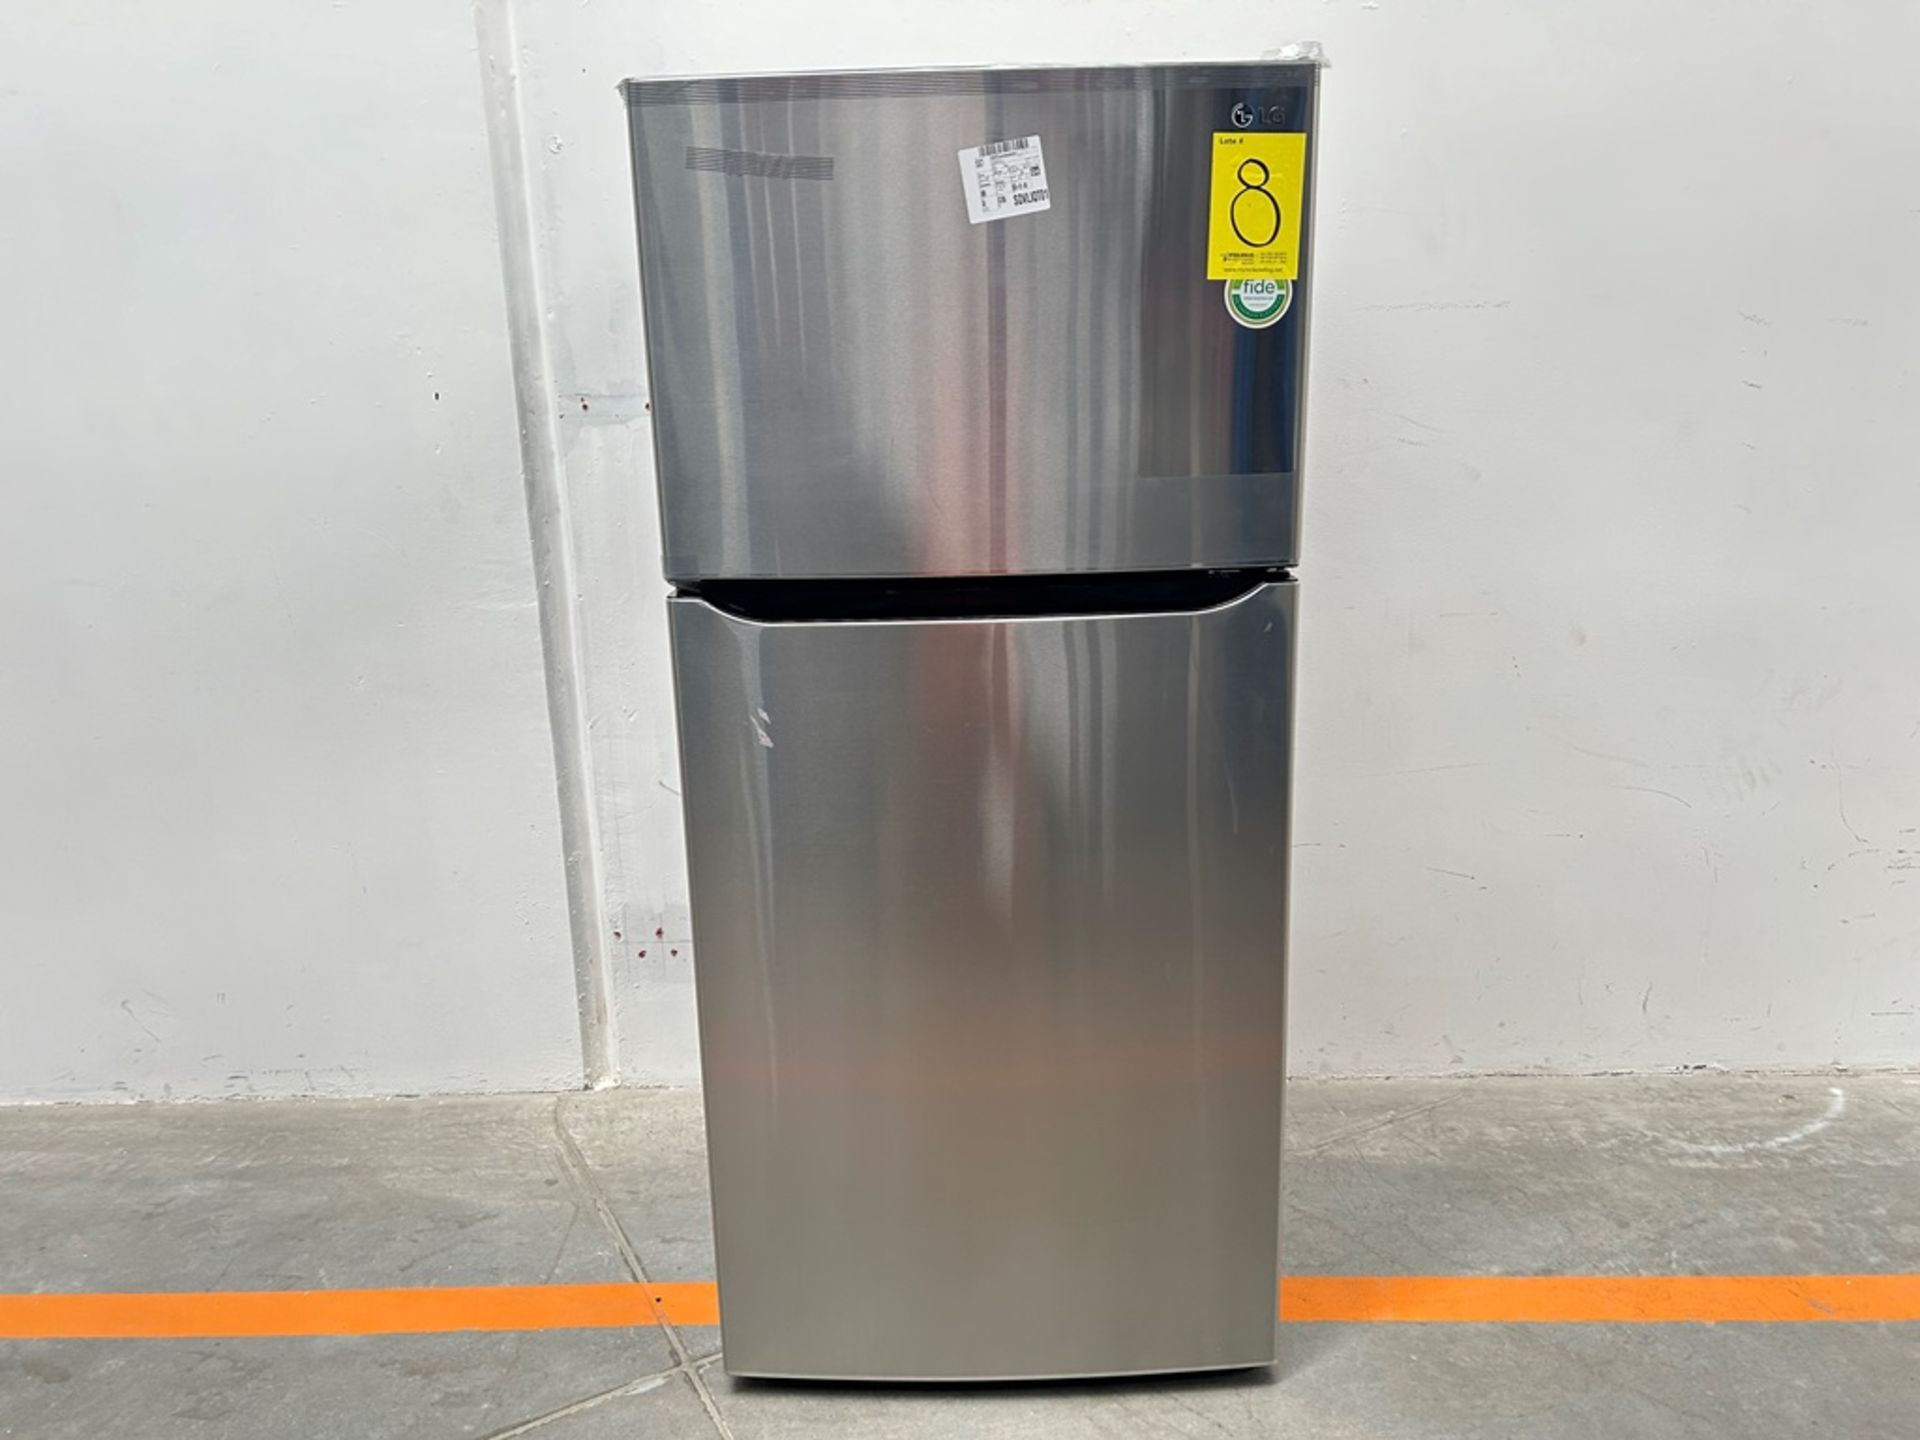 (NUEVO) Refrigerador Marca LG, Modelo LT57BPSX, Serie P2D419, Color GRIS